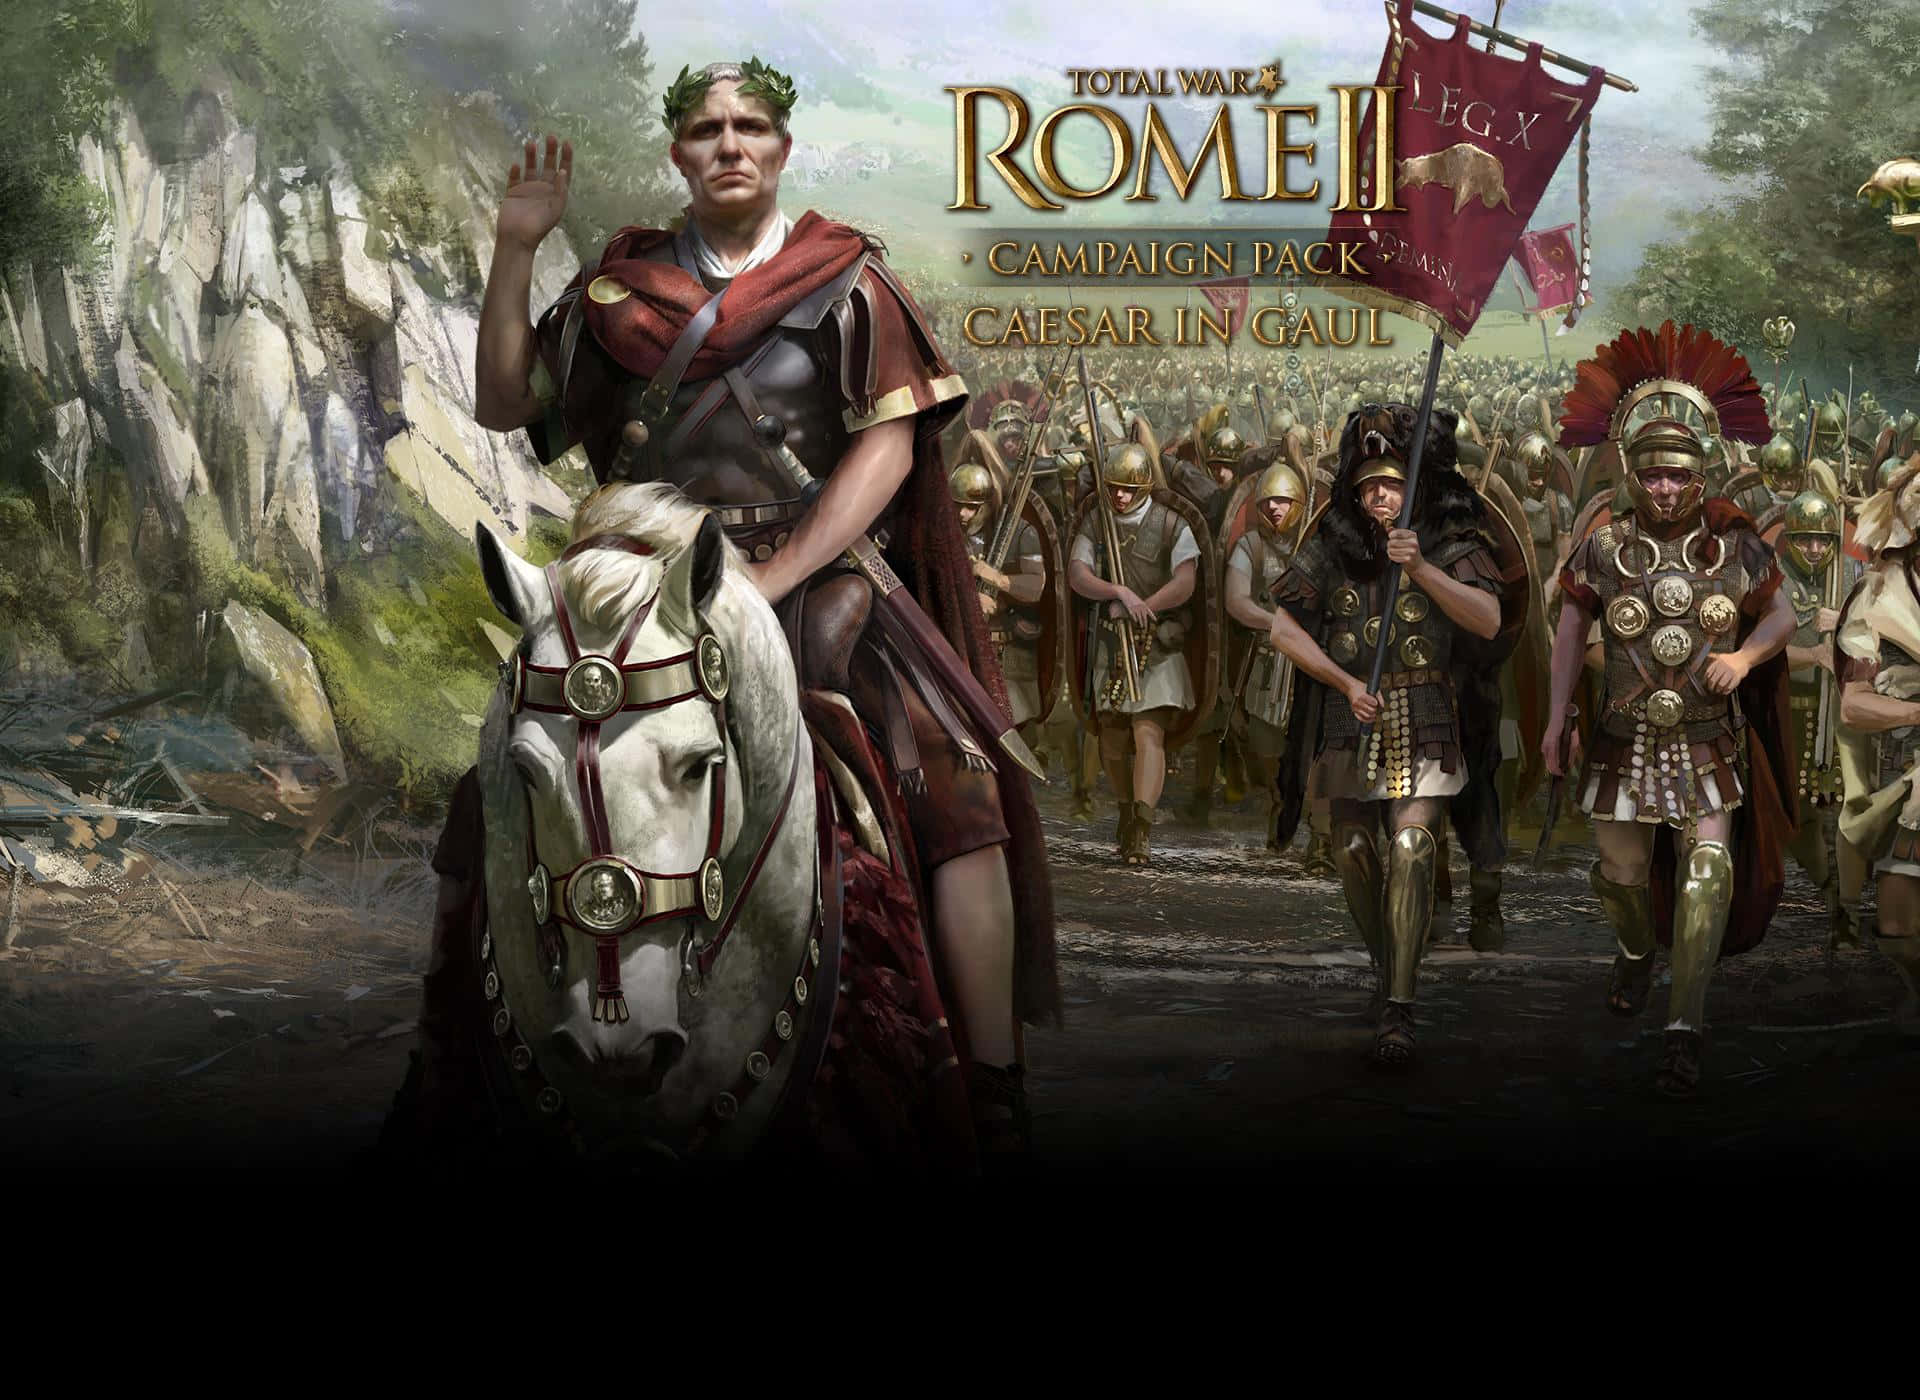 Tag kommandoen over det stigende Romerske Imperium i 